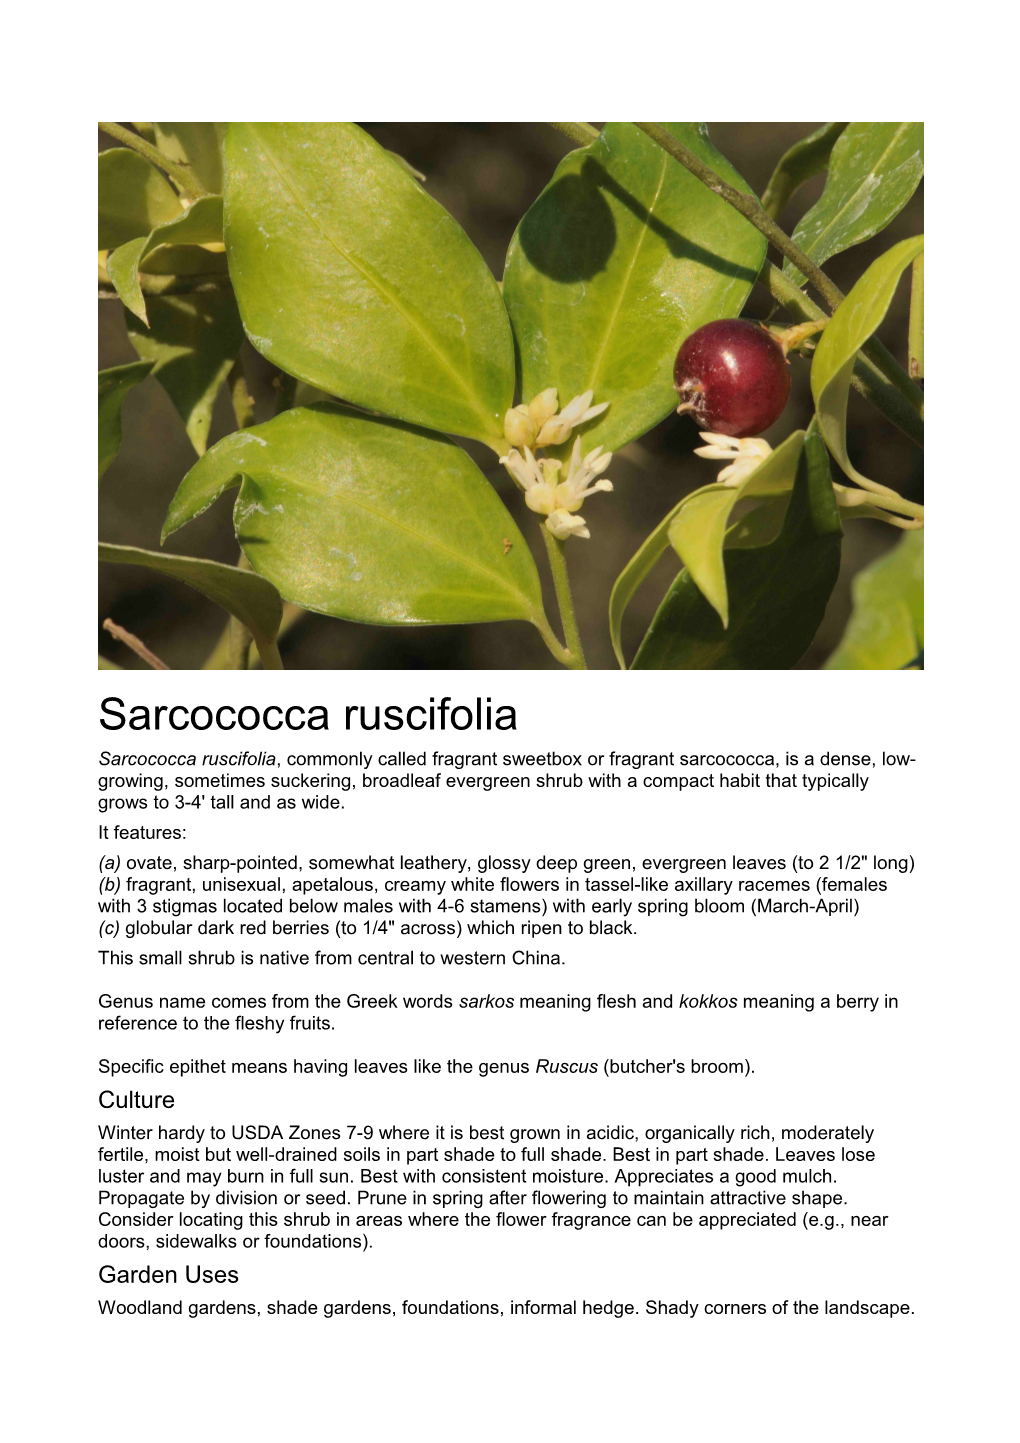 Sarcococca Ruscifolia